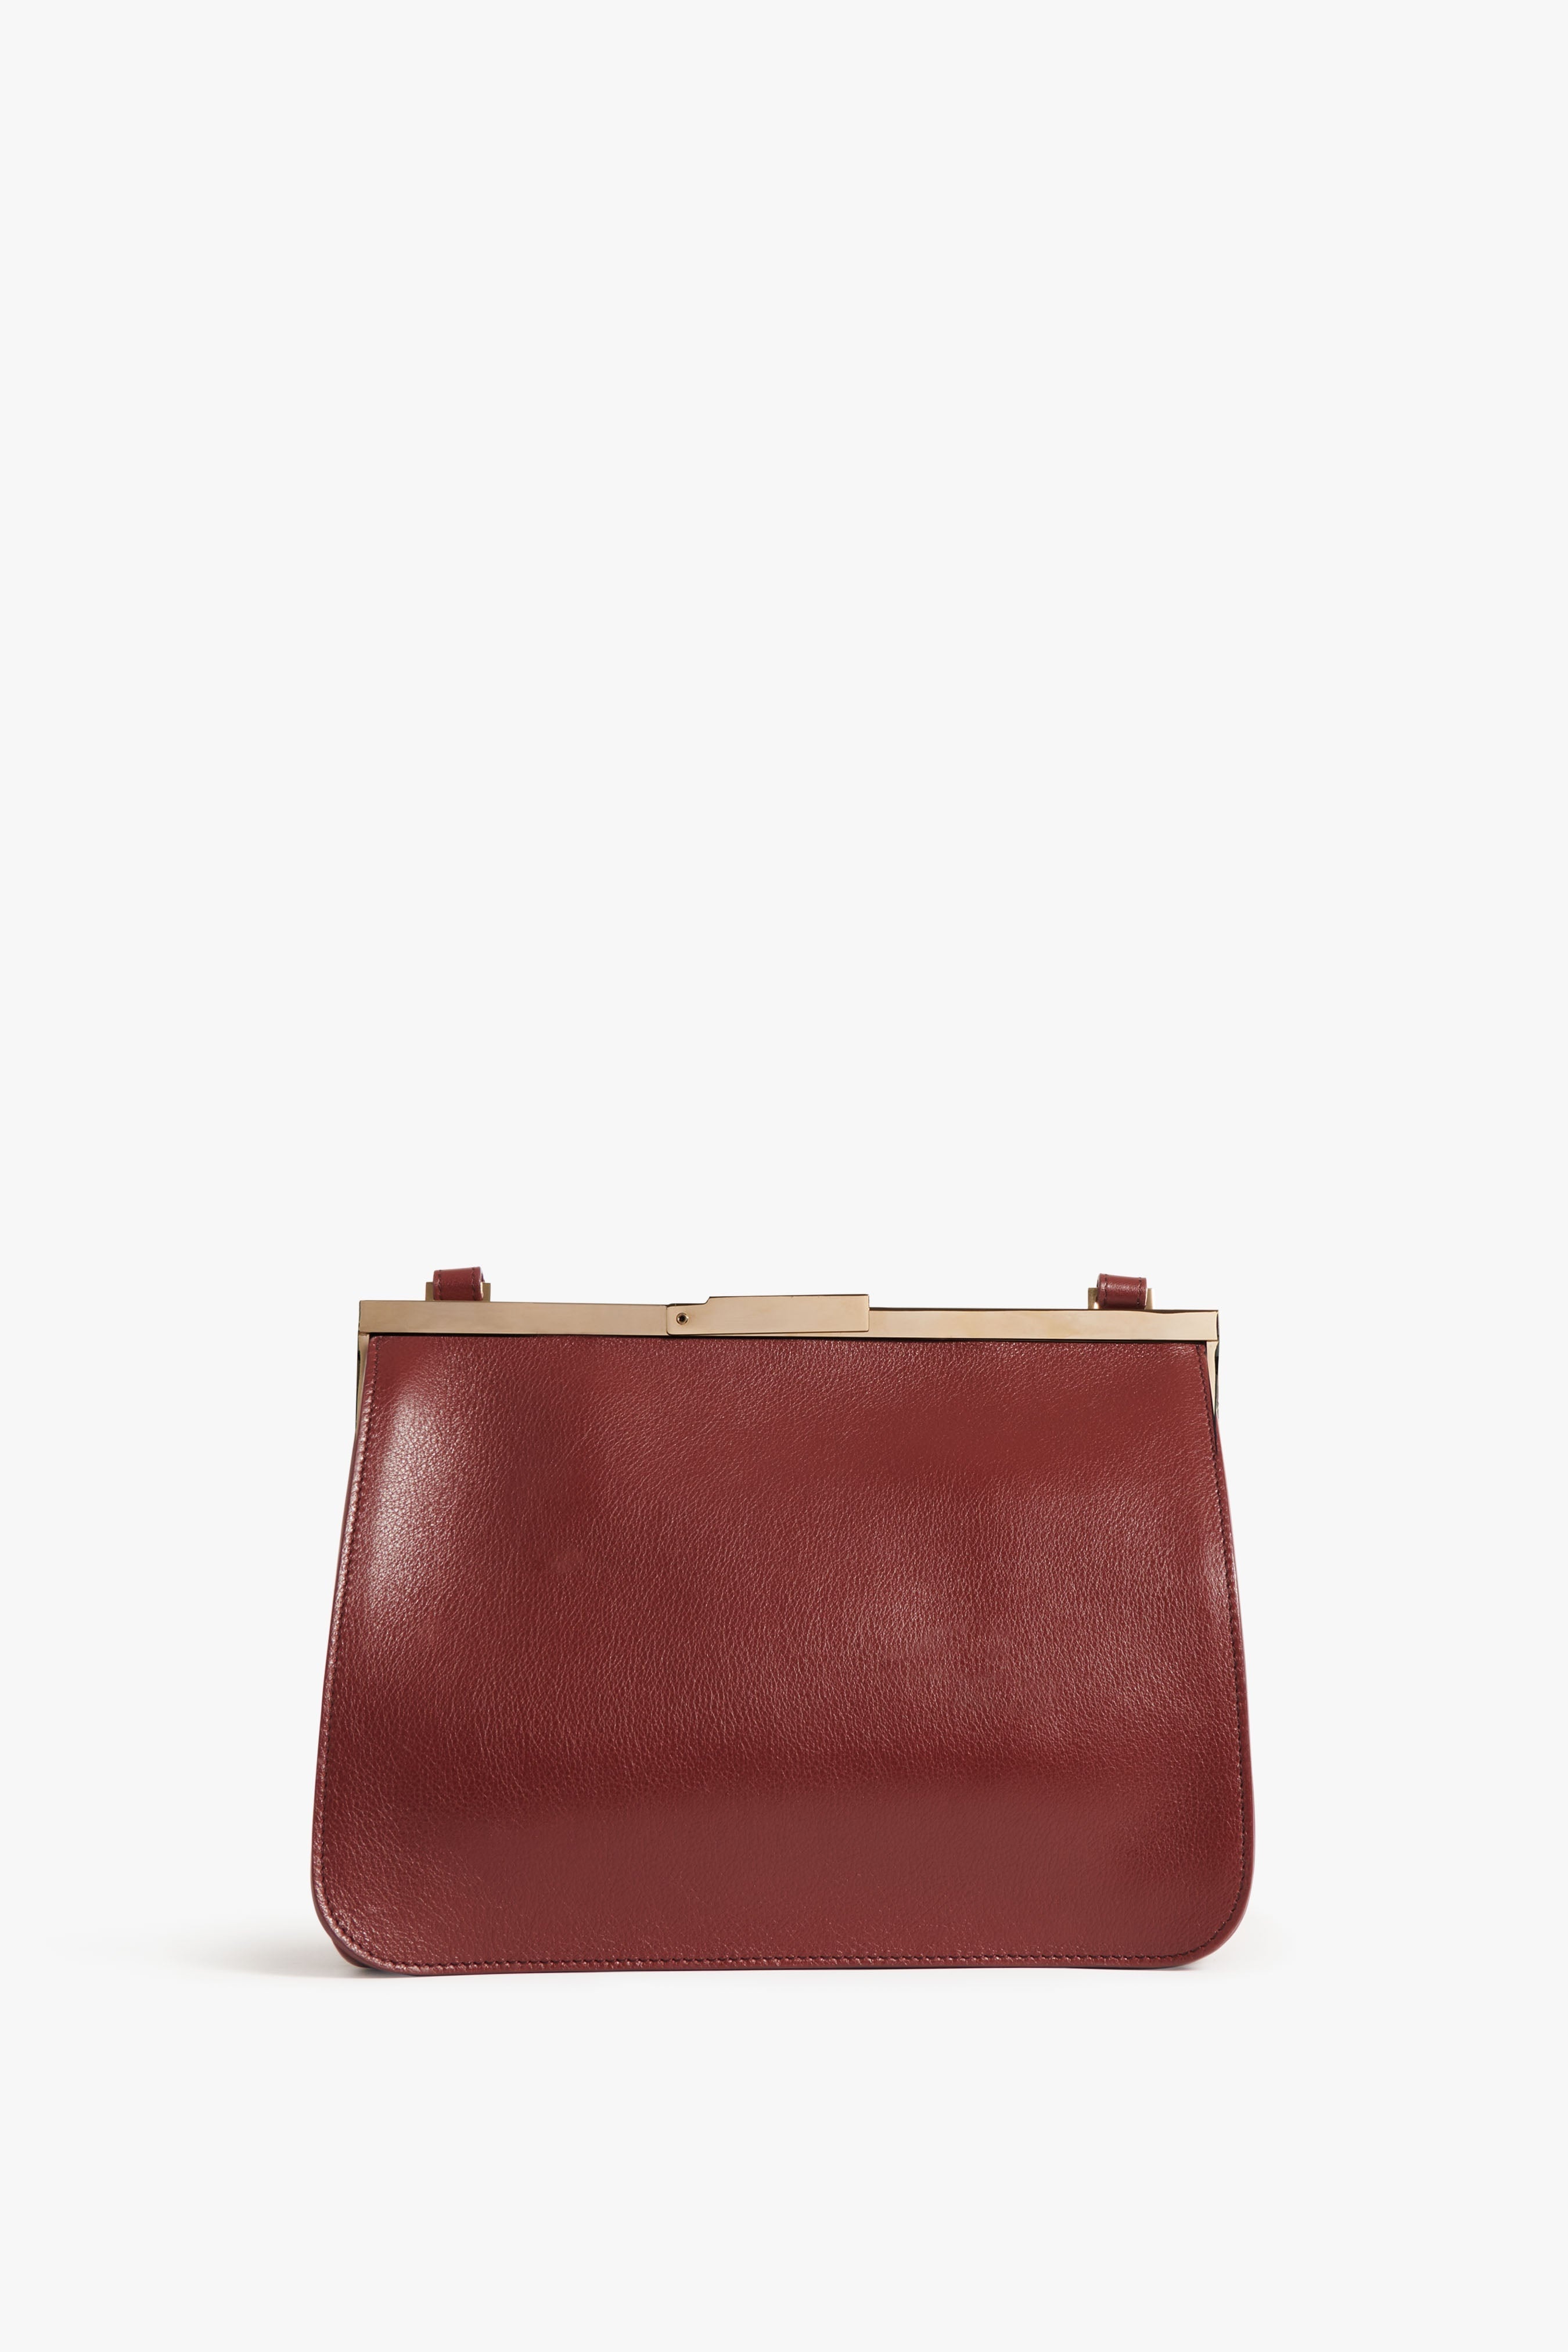 Frame Satchel Bag In Burgundy Leather - 4